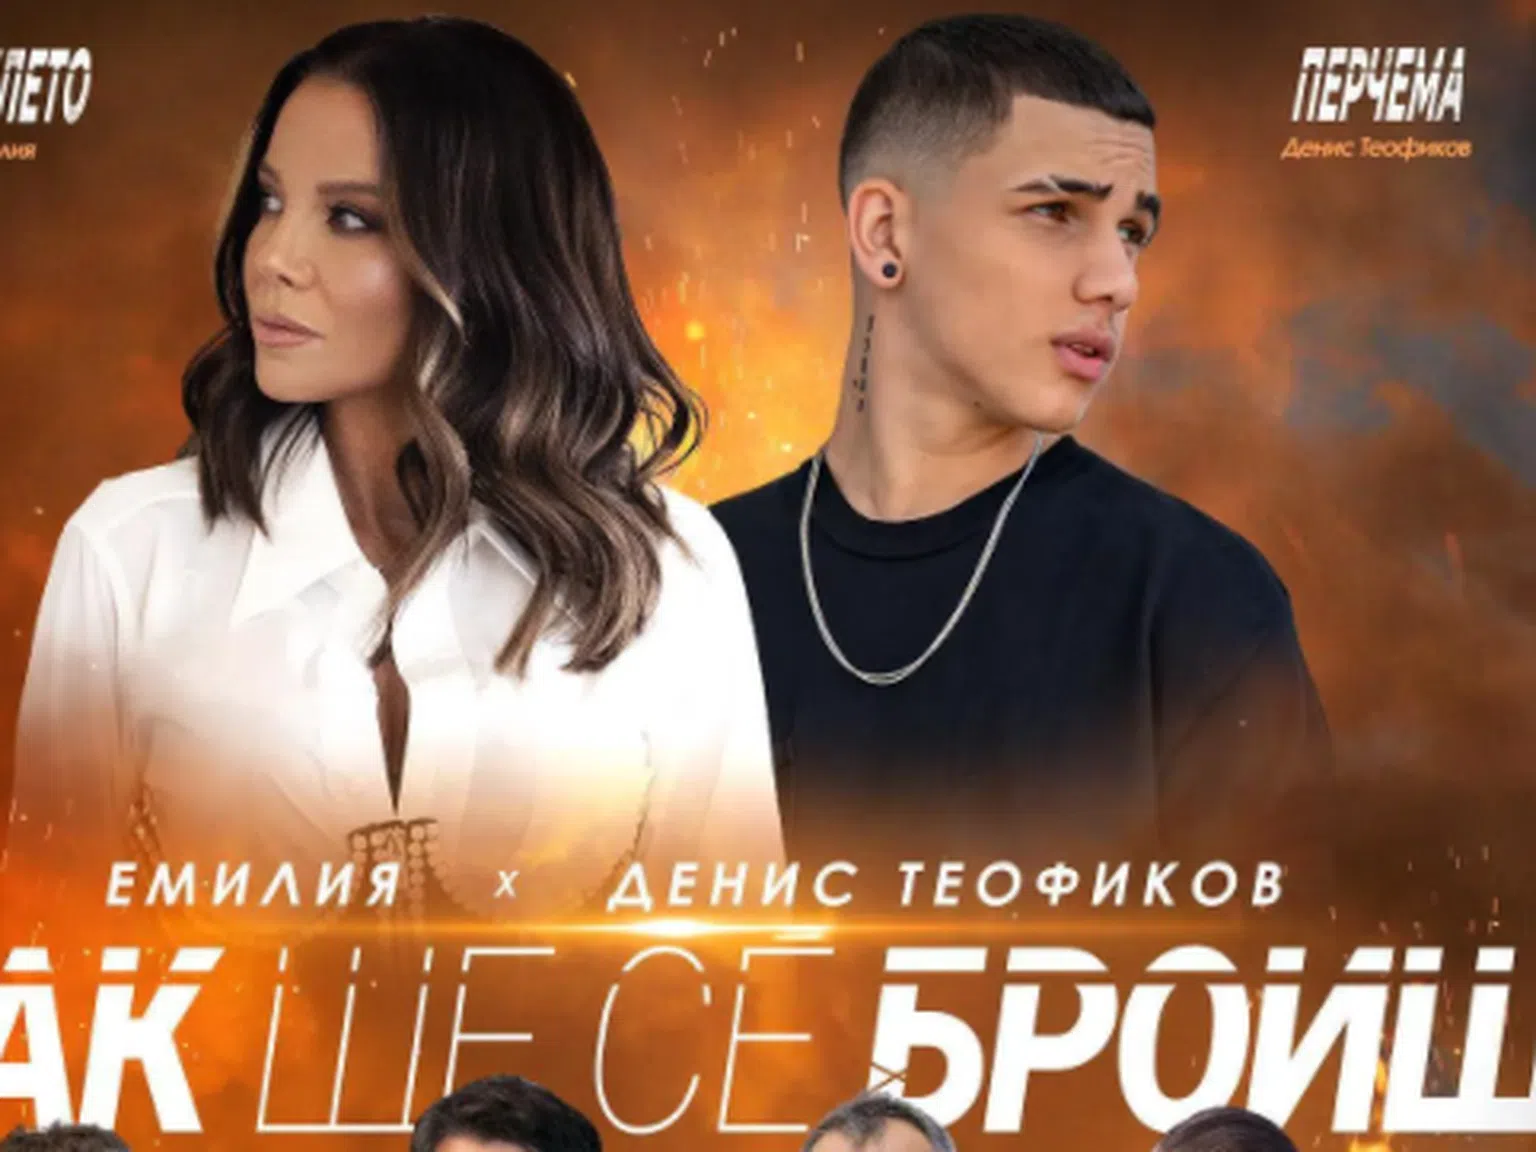 Ето го дългоочакваното видео на песента на Емилия и Денис Теофиков 'Пак ще се броиш'